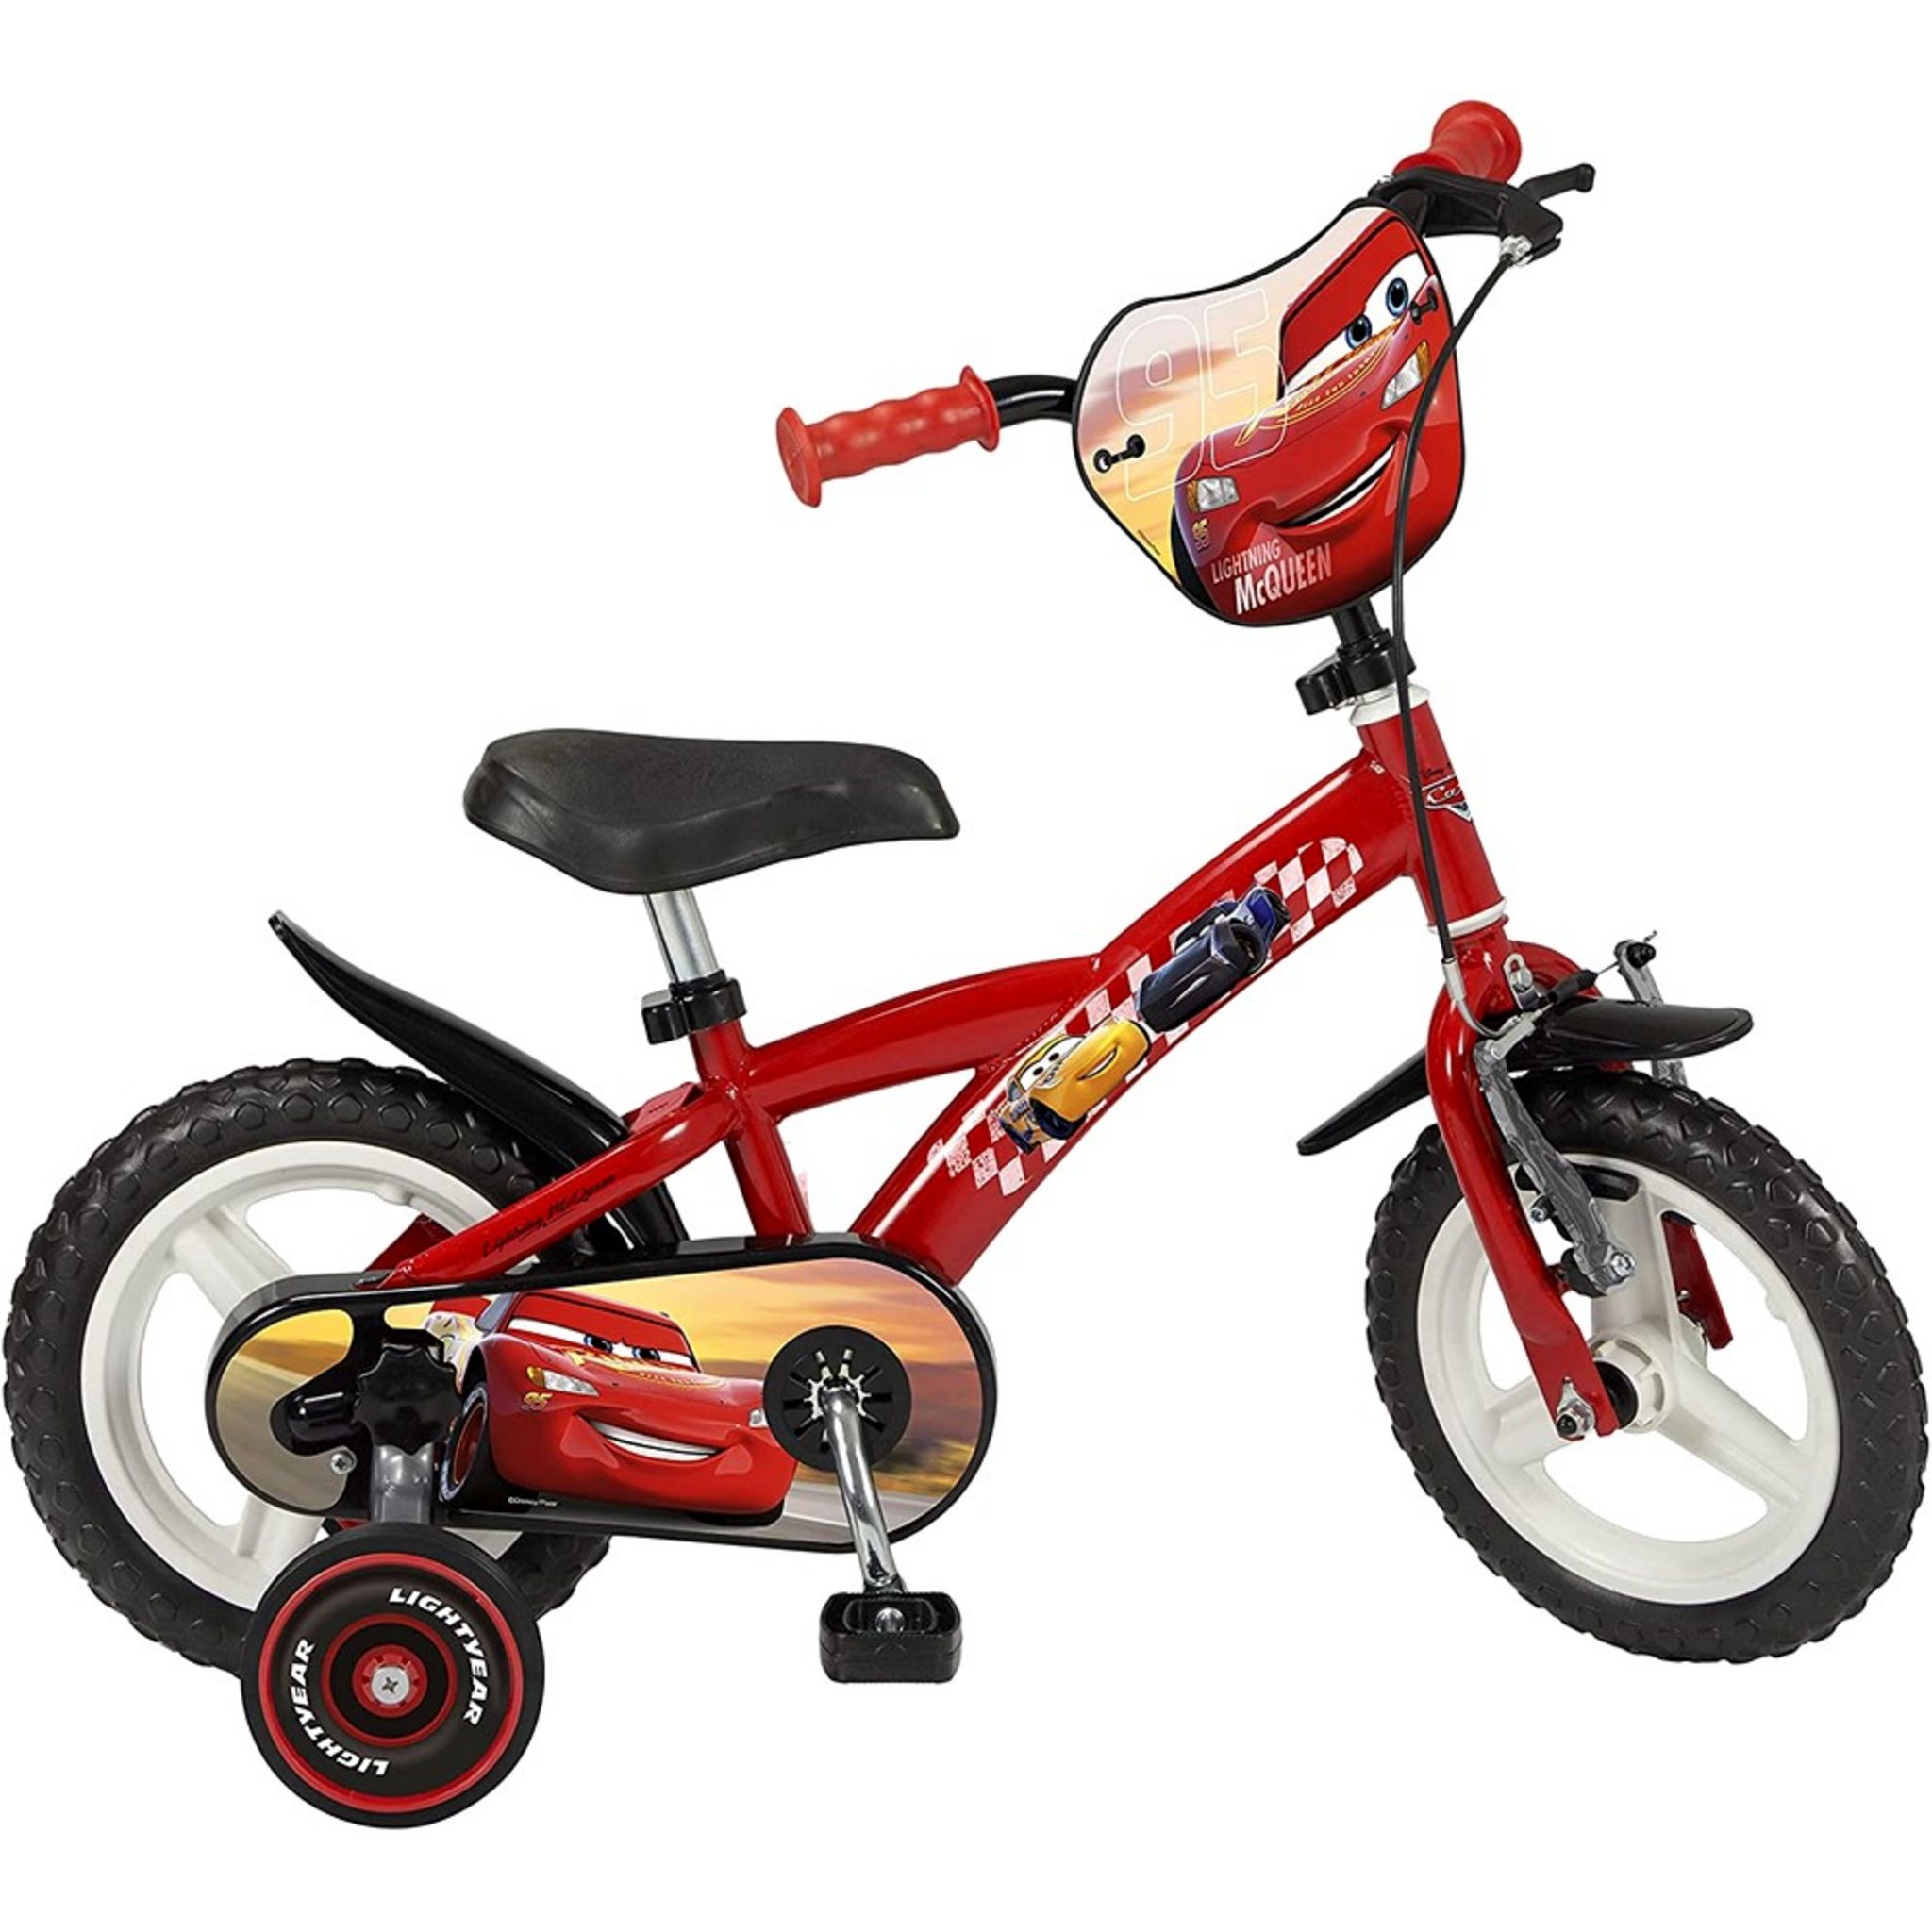 Vélo enfant Disney Cars - garçon - 10 po - rouge